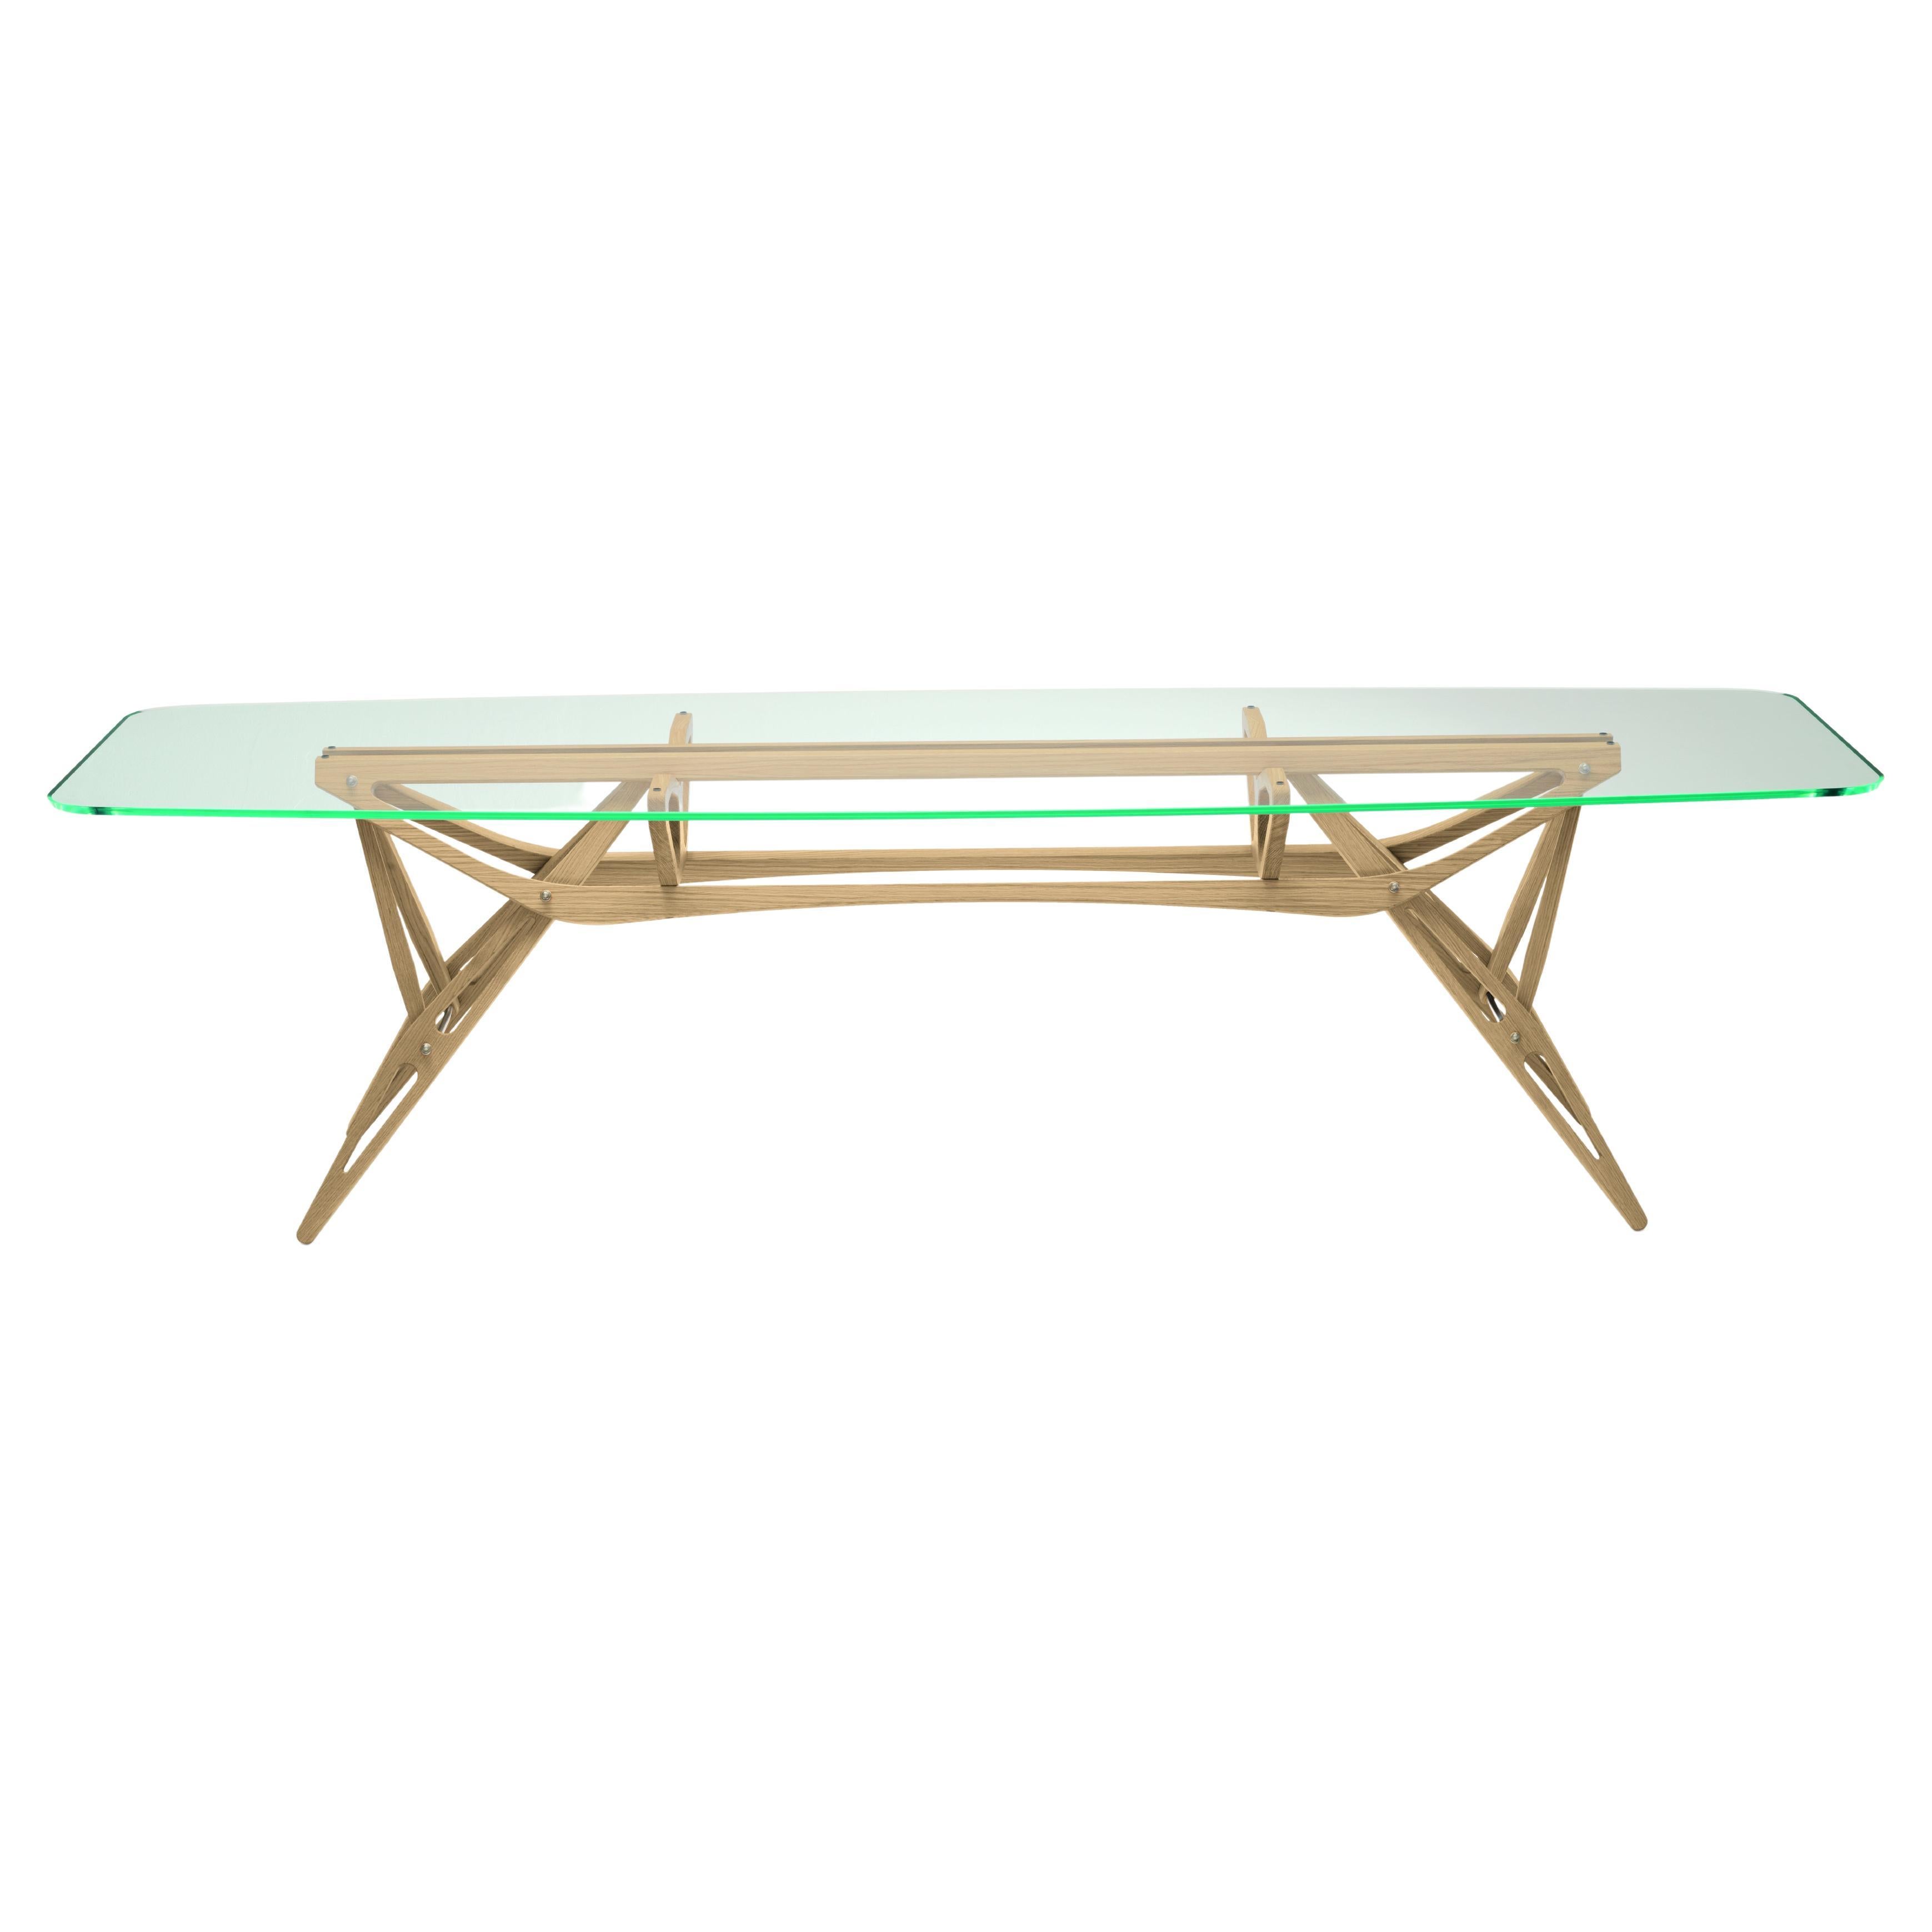 Petite table Reale CM de Zanotta avec plateau en verre transparent et cadre en chêne naturel